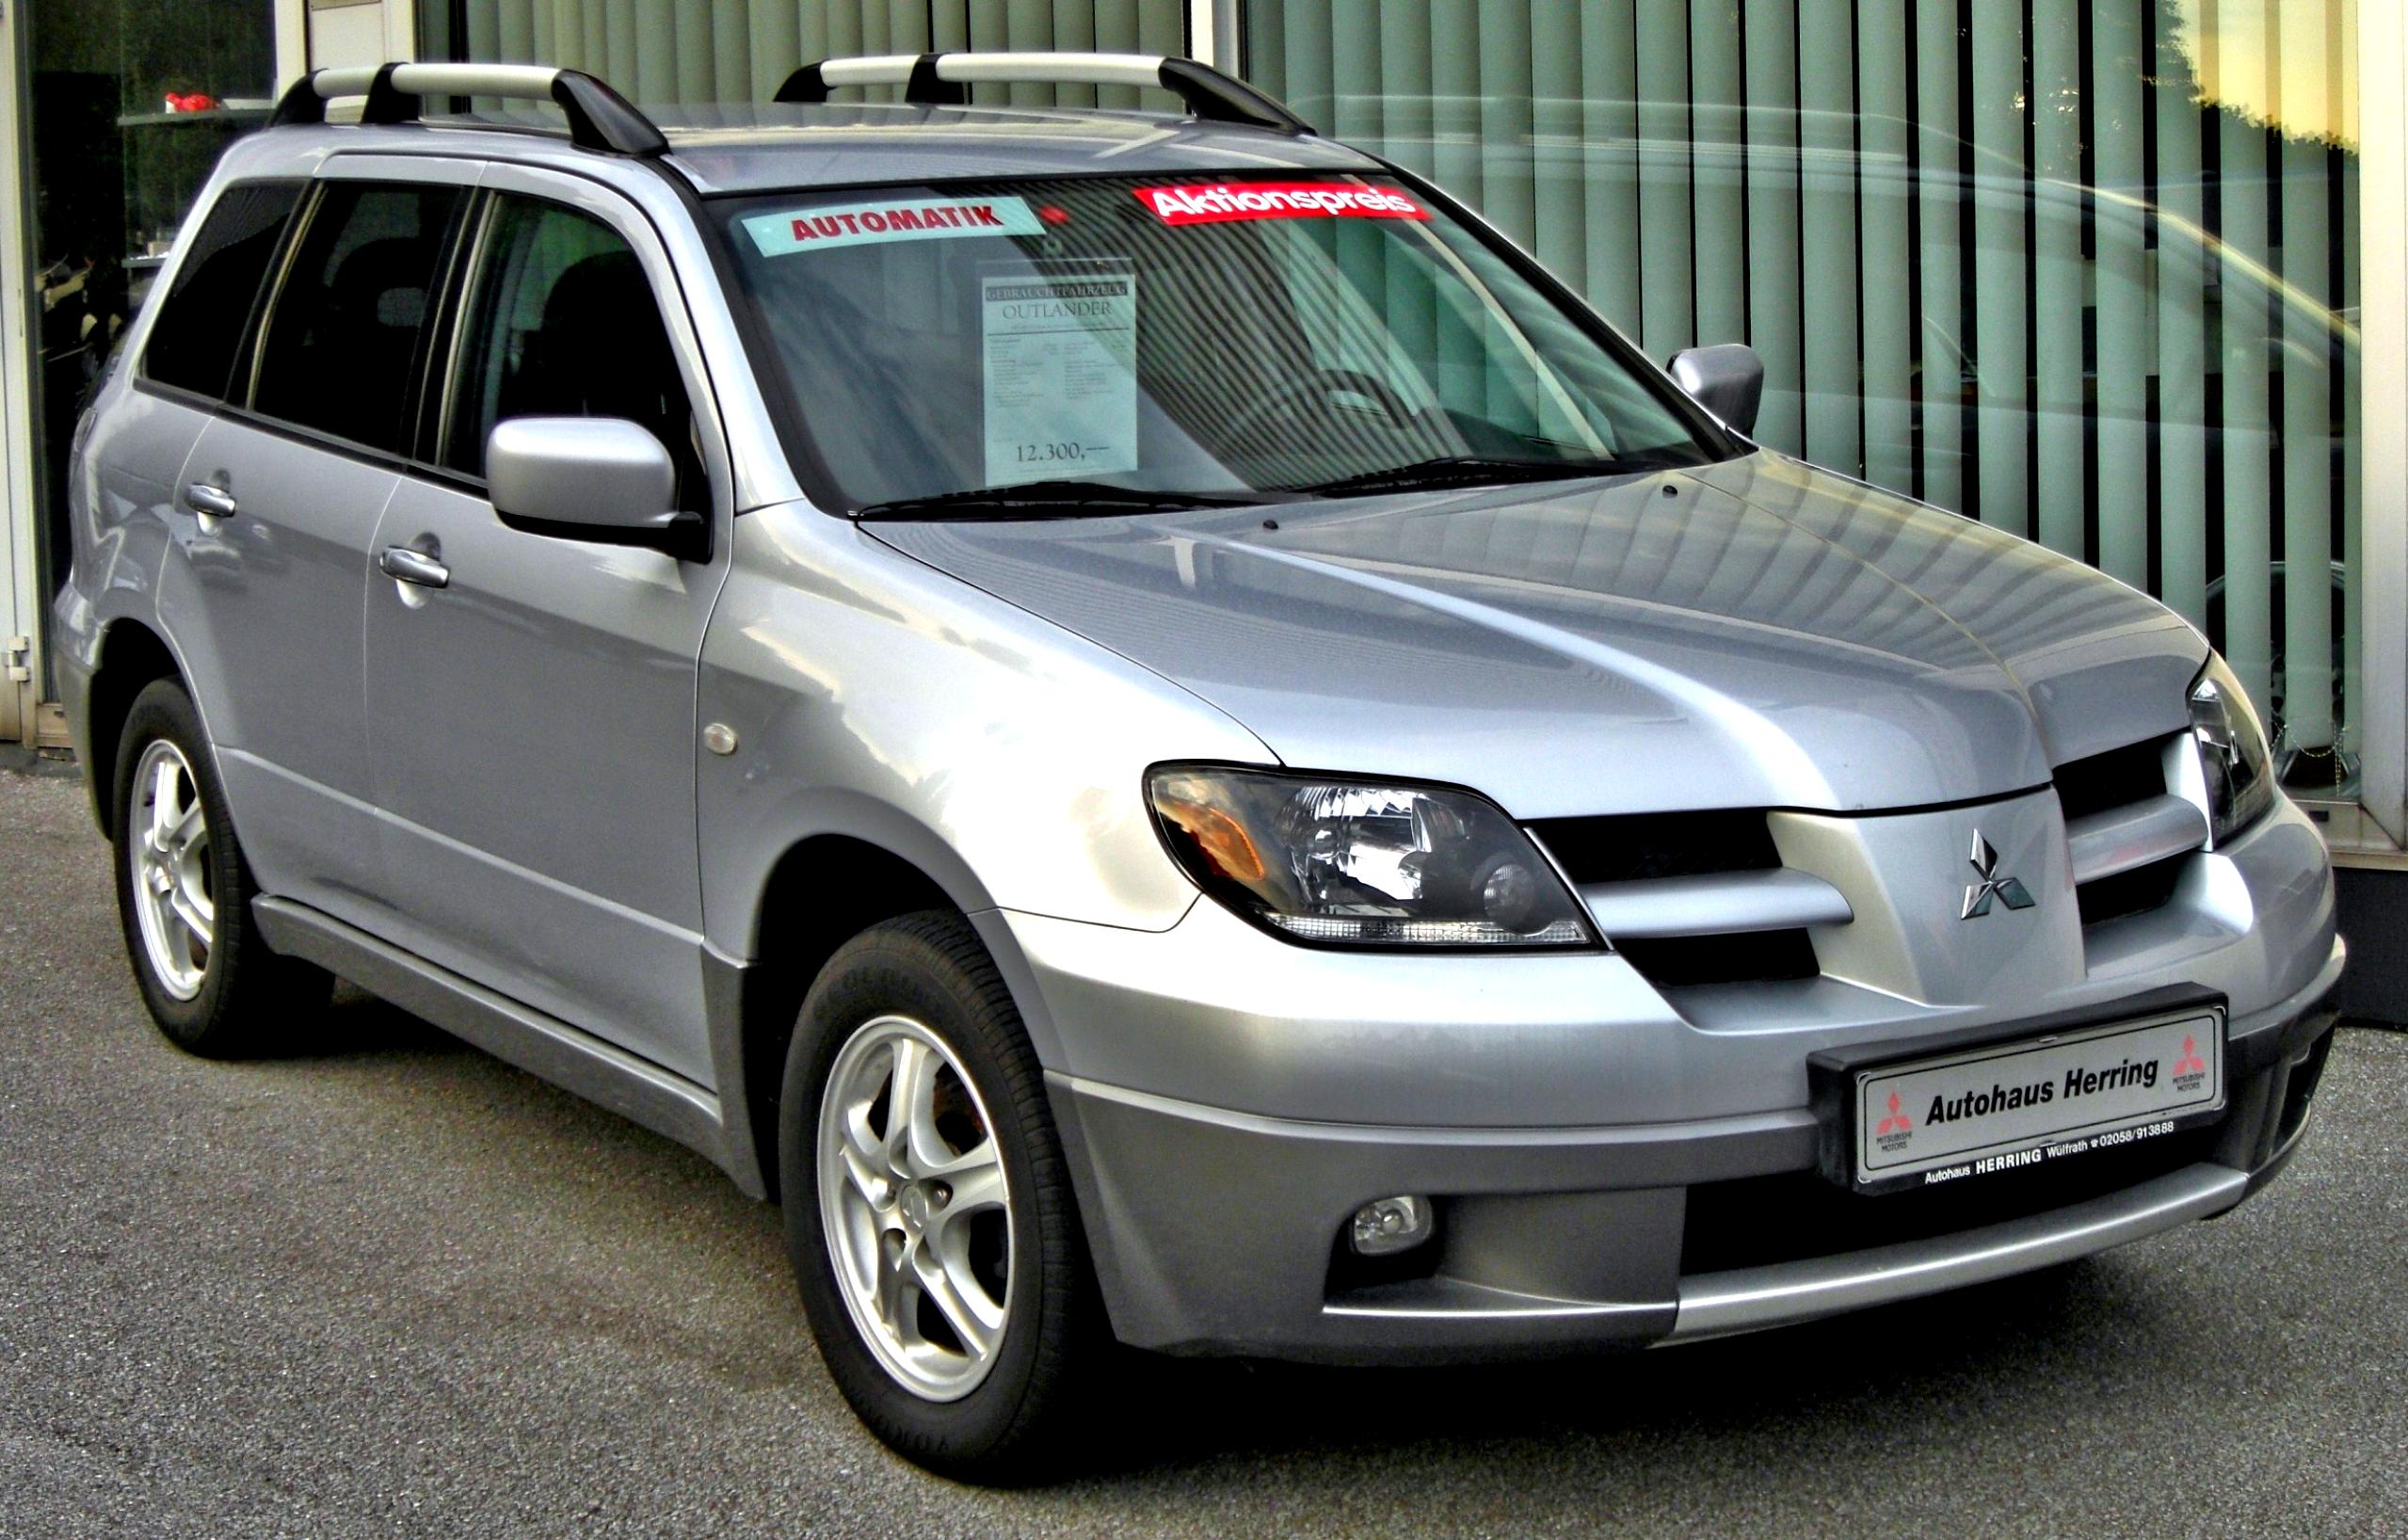 Mitsubishi outlander 2003